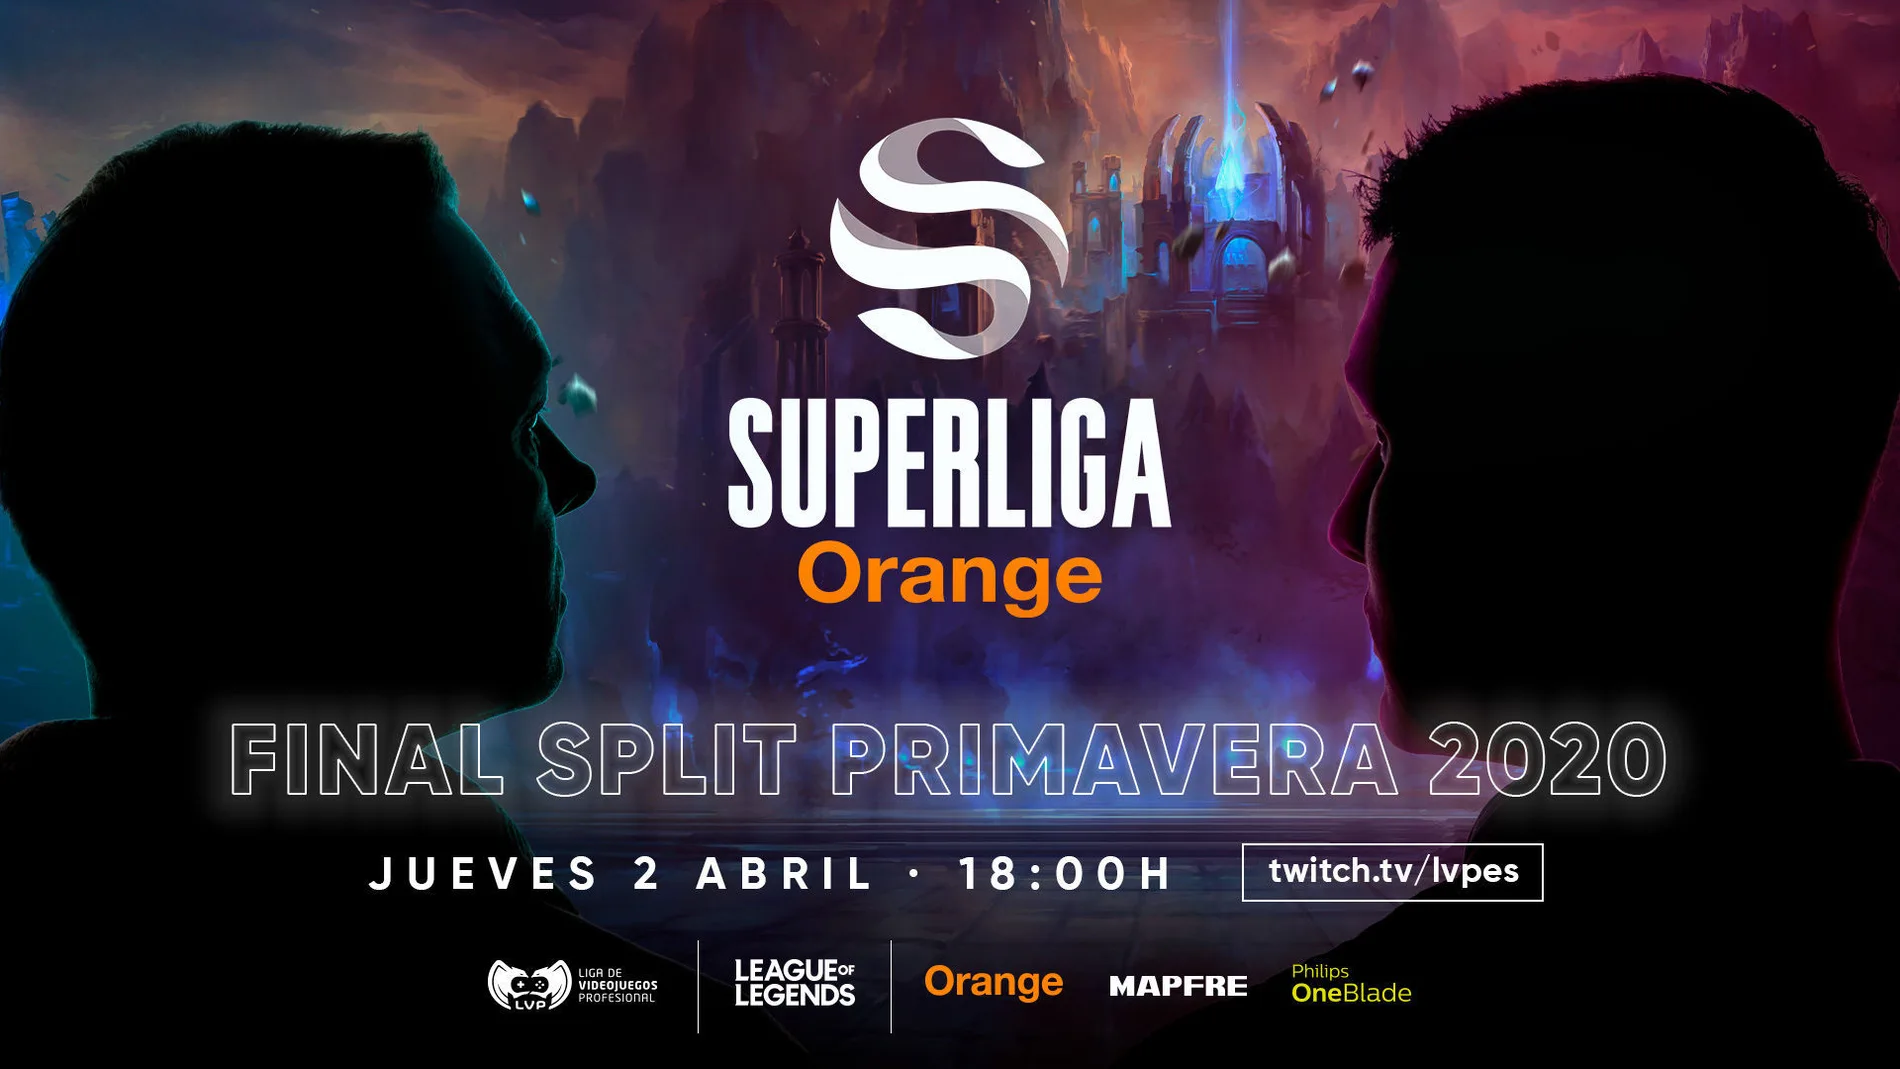 Final Split Primavera 2020 - Superliga Orange